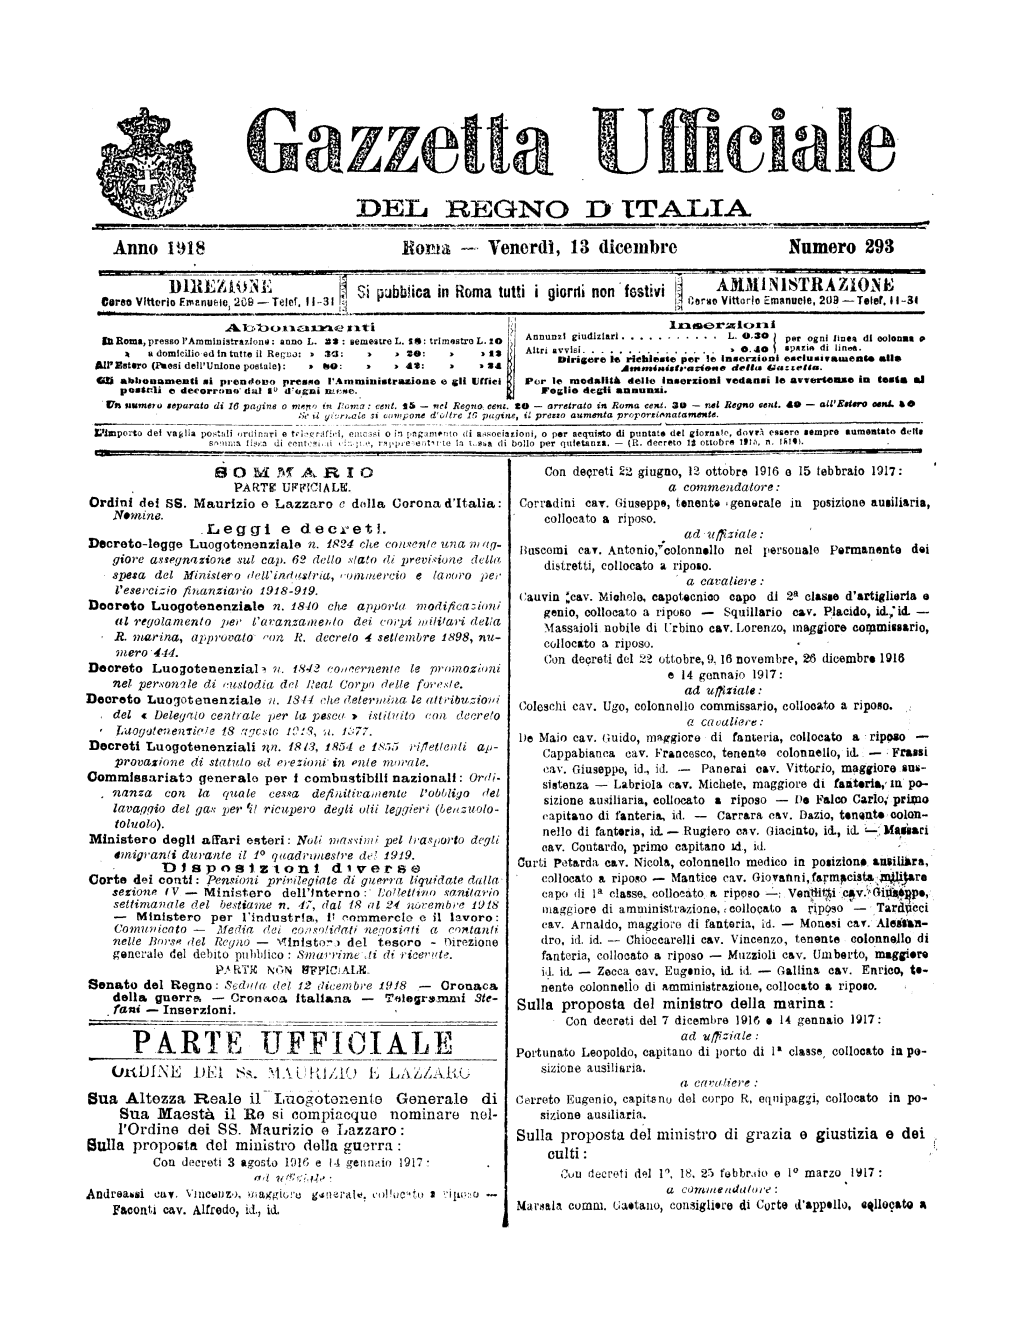 Gazzetta Ufficiale Del Regno D'italia N. 293 Del 13 Dicembre 1918 Parte Ufficiale E Parte Non Ufficiale